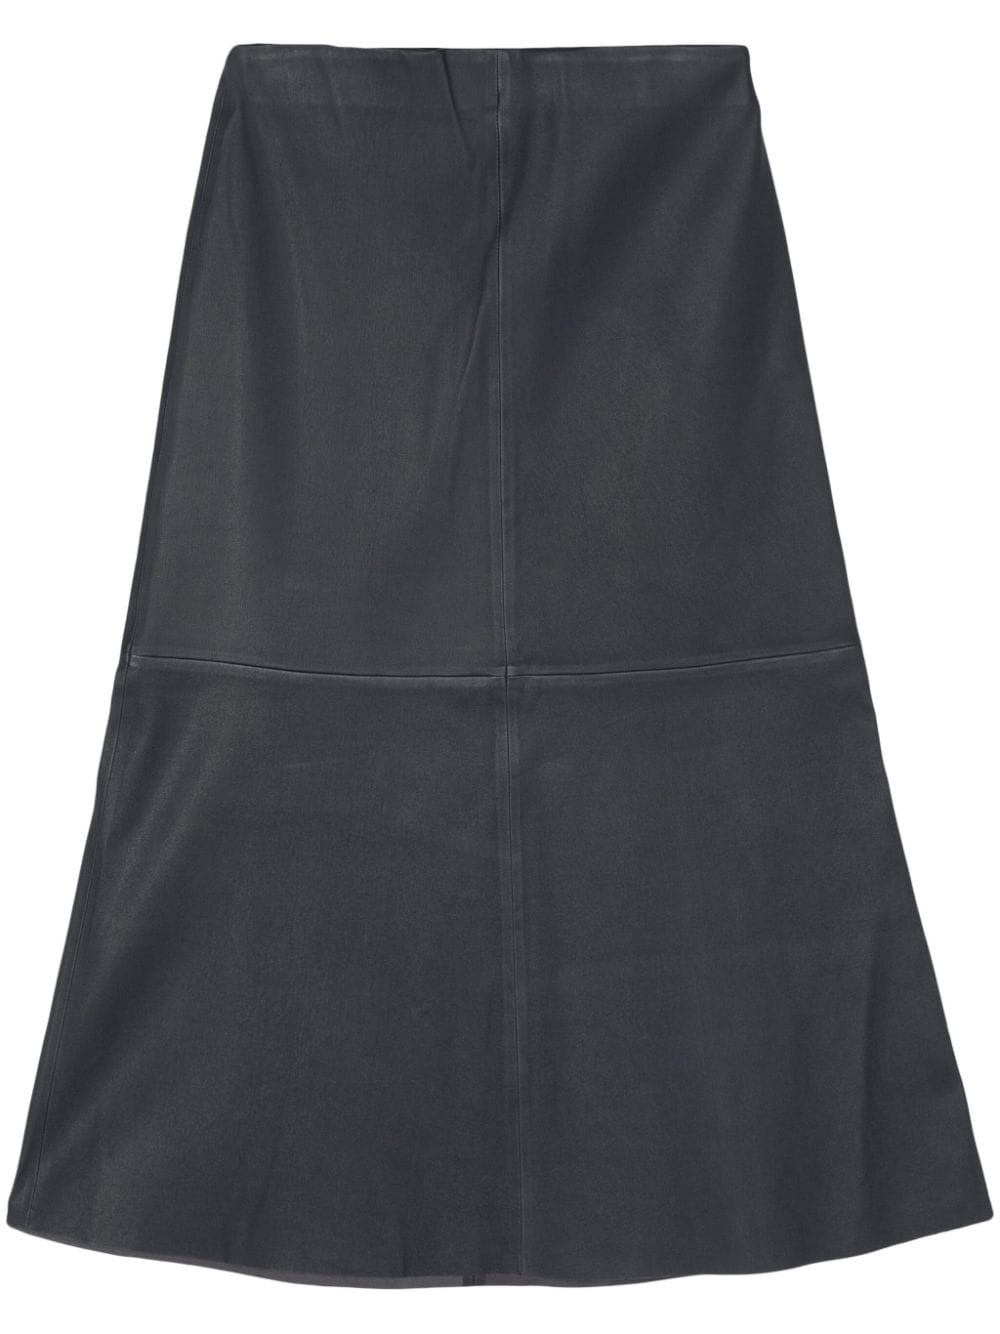 Simoas leather skirt - 1